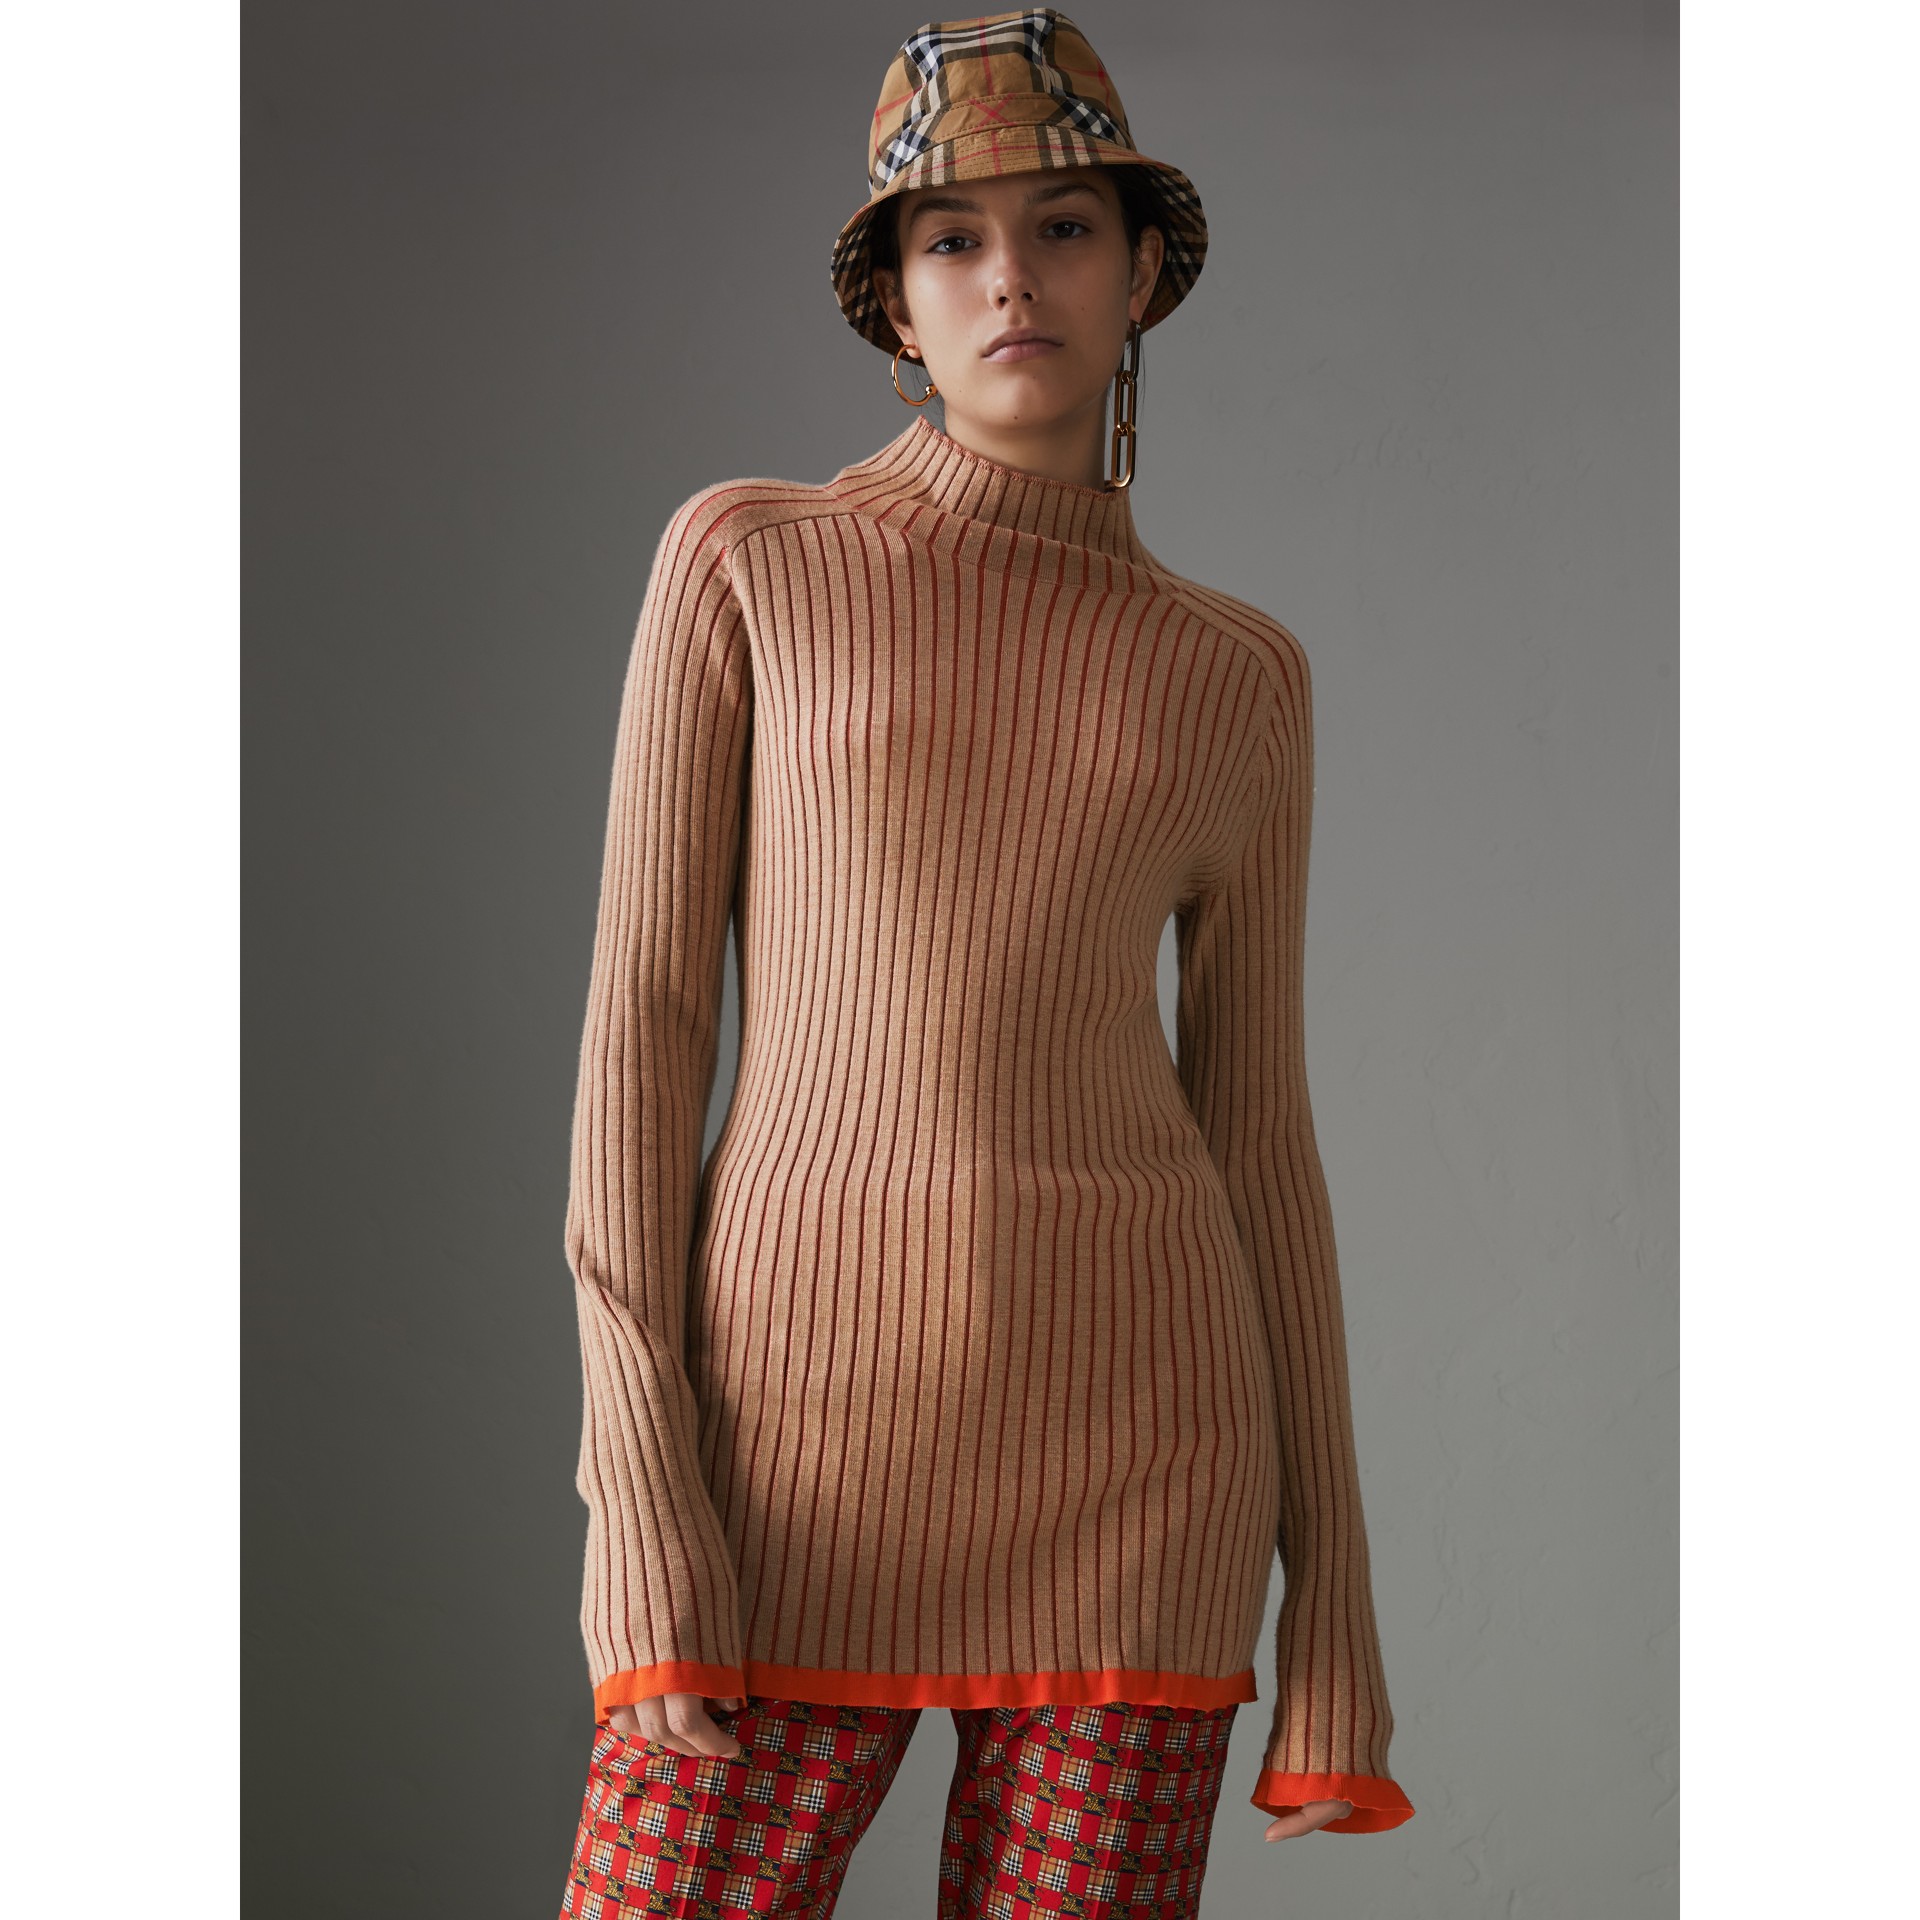 BURBERRY Silk Cashmere Turtleneck Sweater,80015041